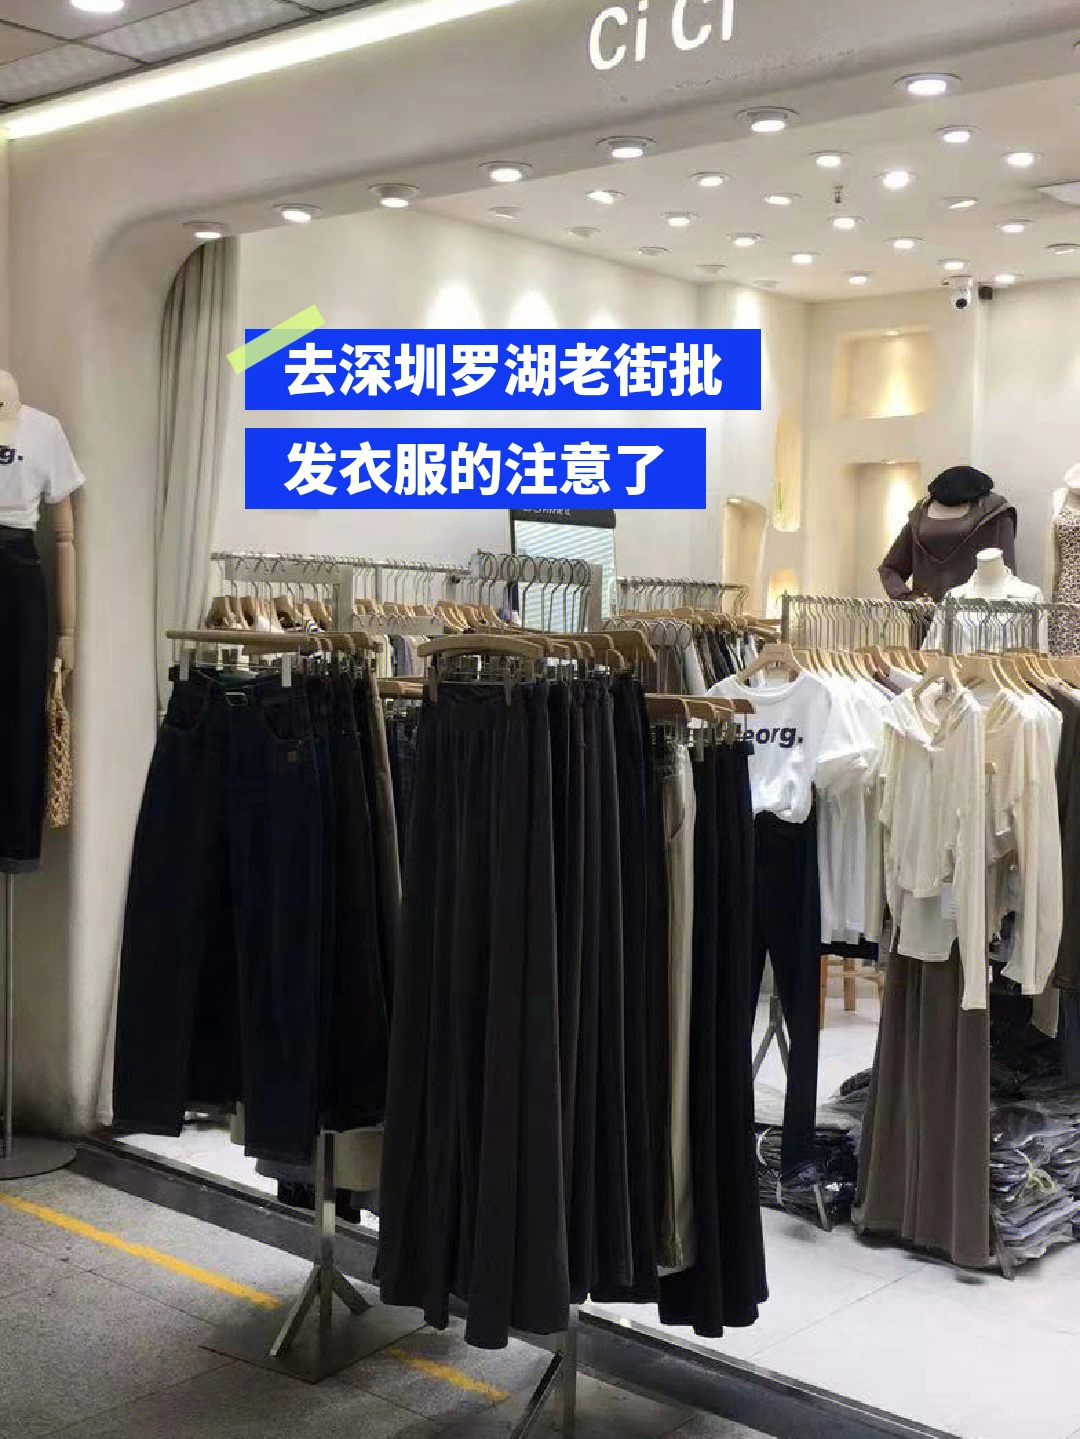 去深圳罗湖老街批发衣服来卖的朋友们注意了